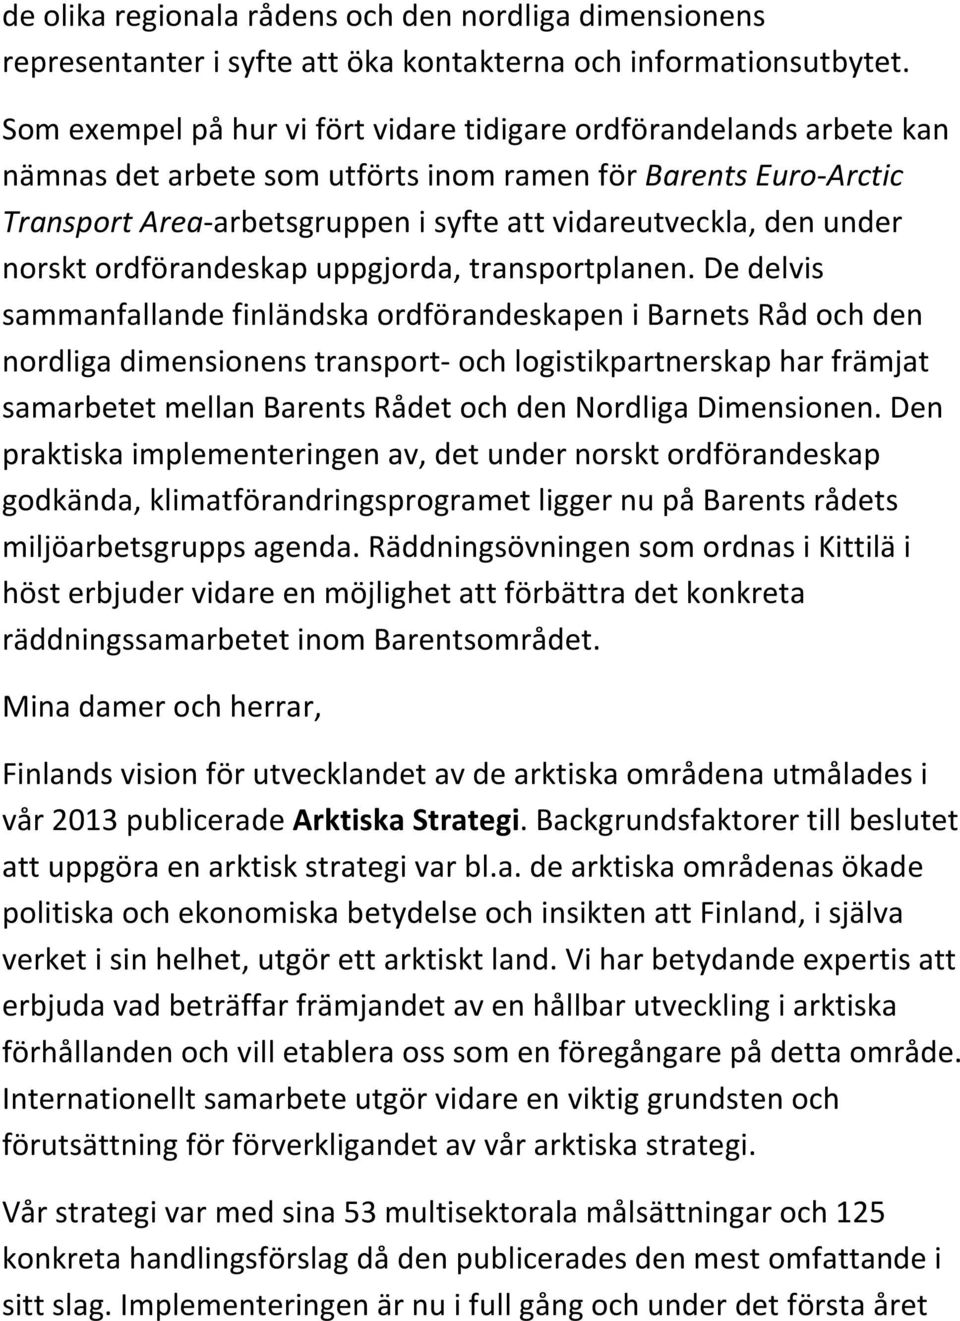 under norskt ordförandeskap uppgjorda, transportplanen.